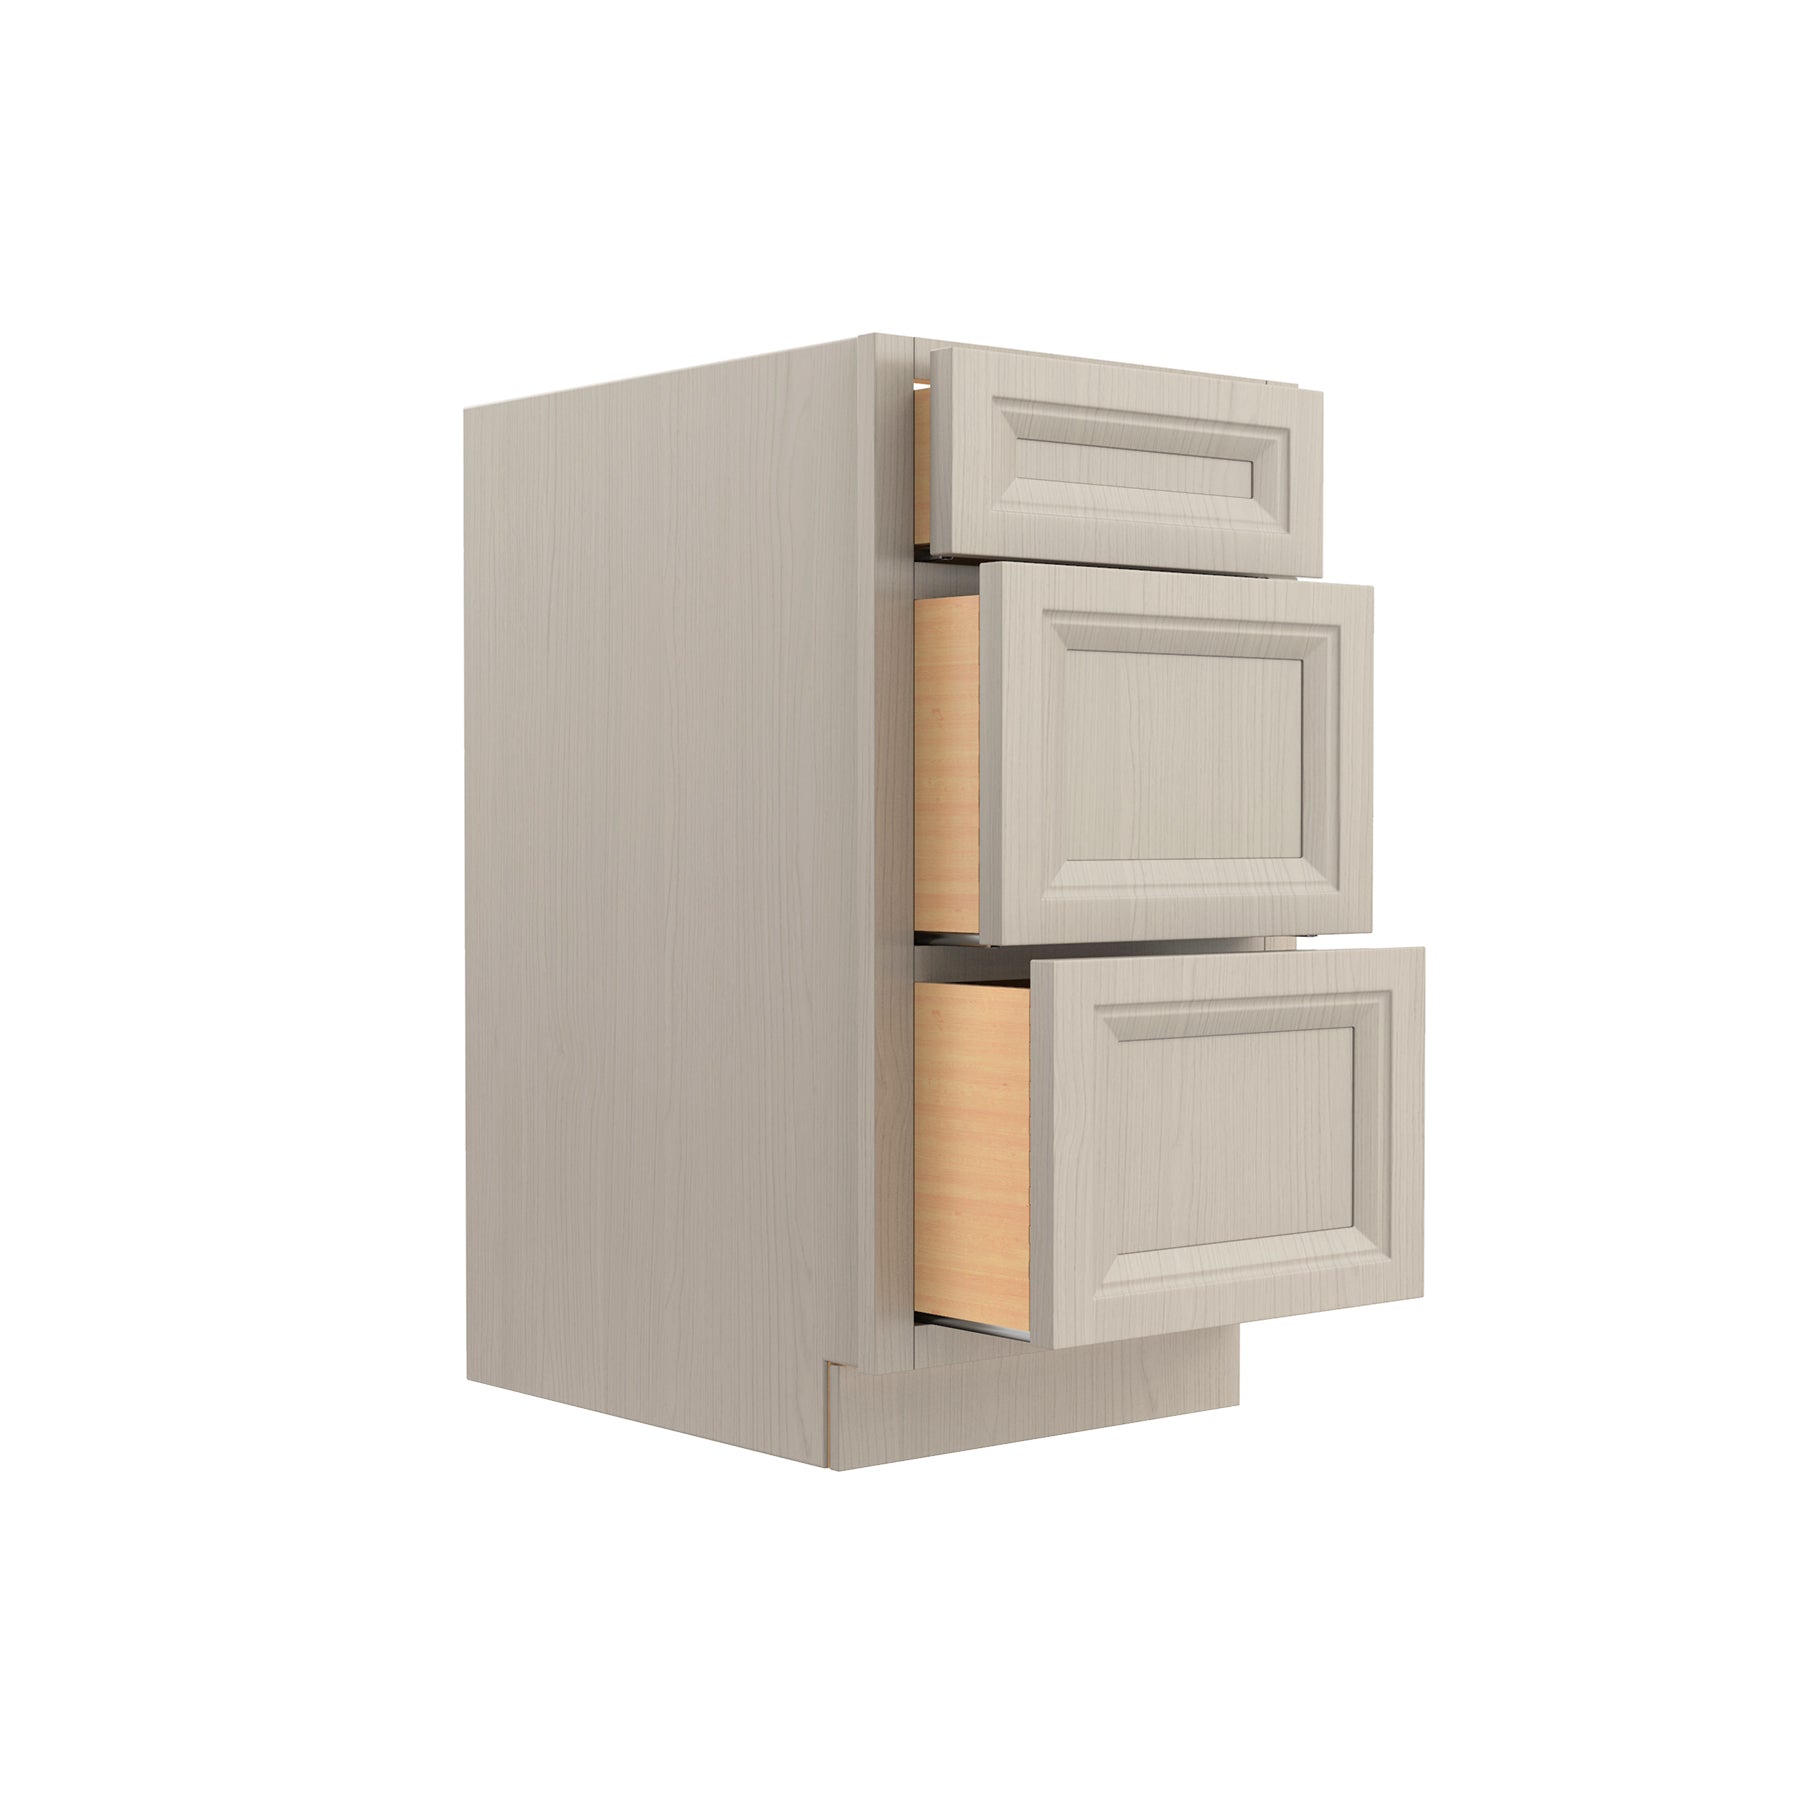 RTA - Richmond Stone - 3 Drawer Base Cabinet | 18"W x 34.5"H x 24"D